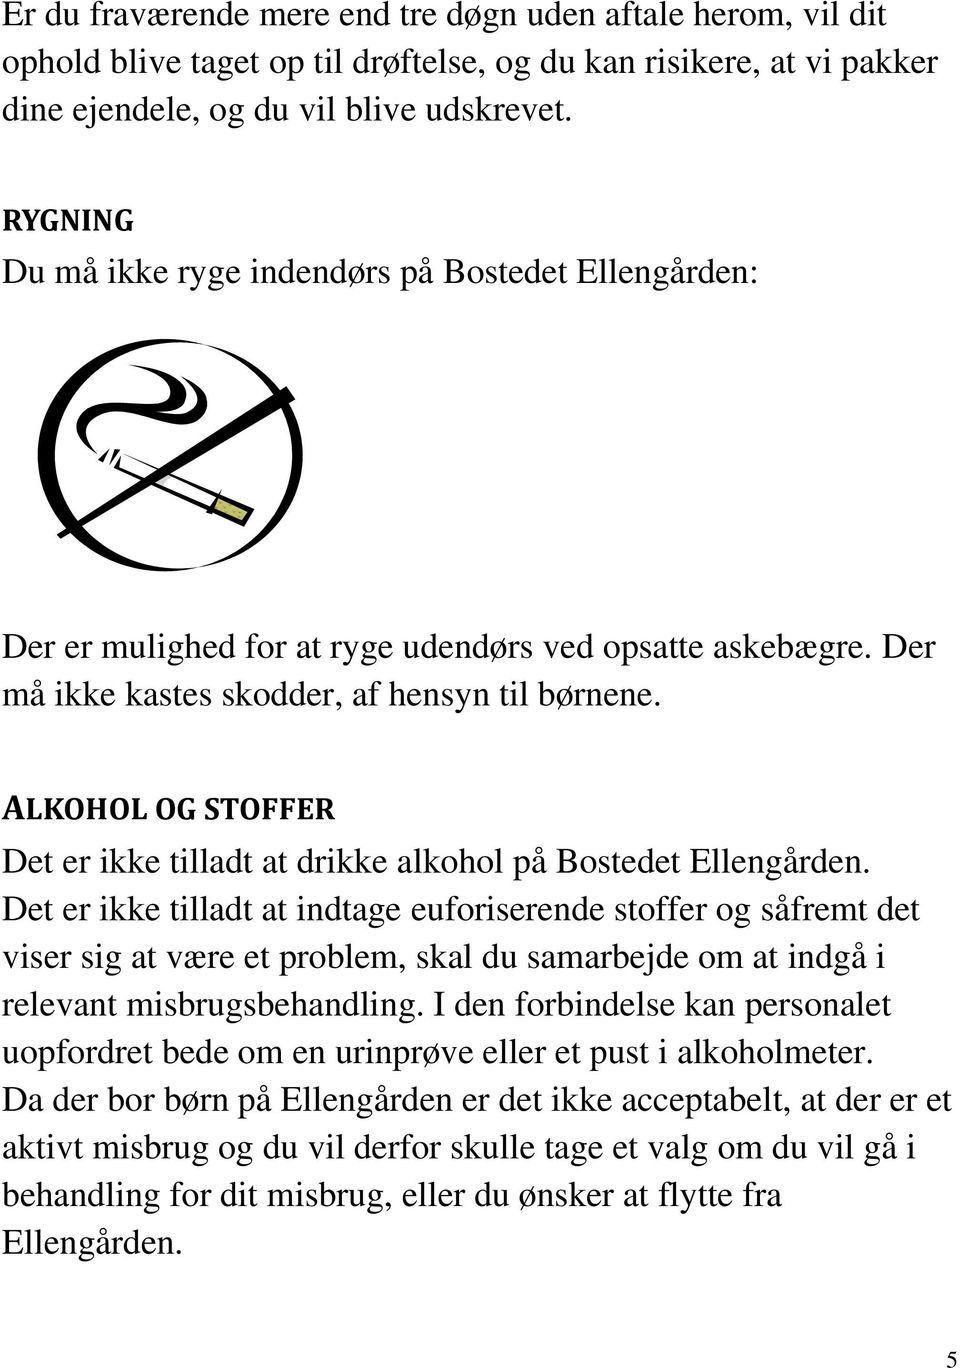 ALKOHOL OG STOFFER Det er ikke tilladt at drikke alkohol på Bostedet Ellengården.